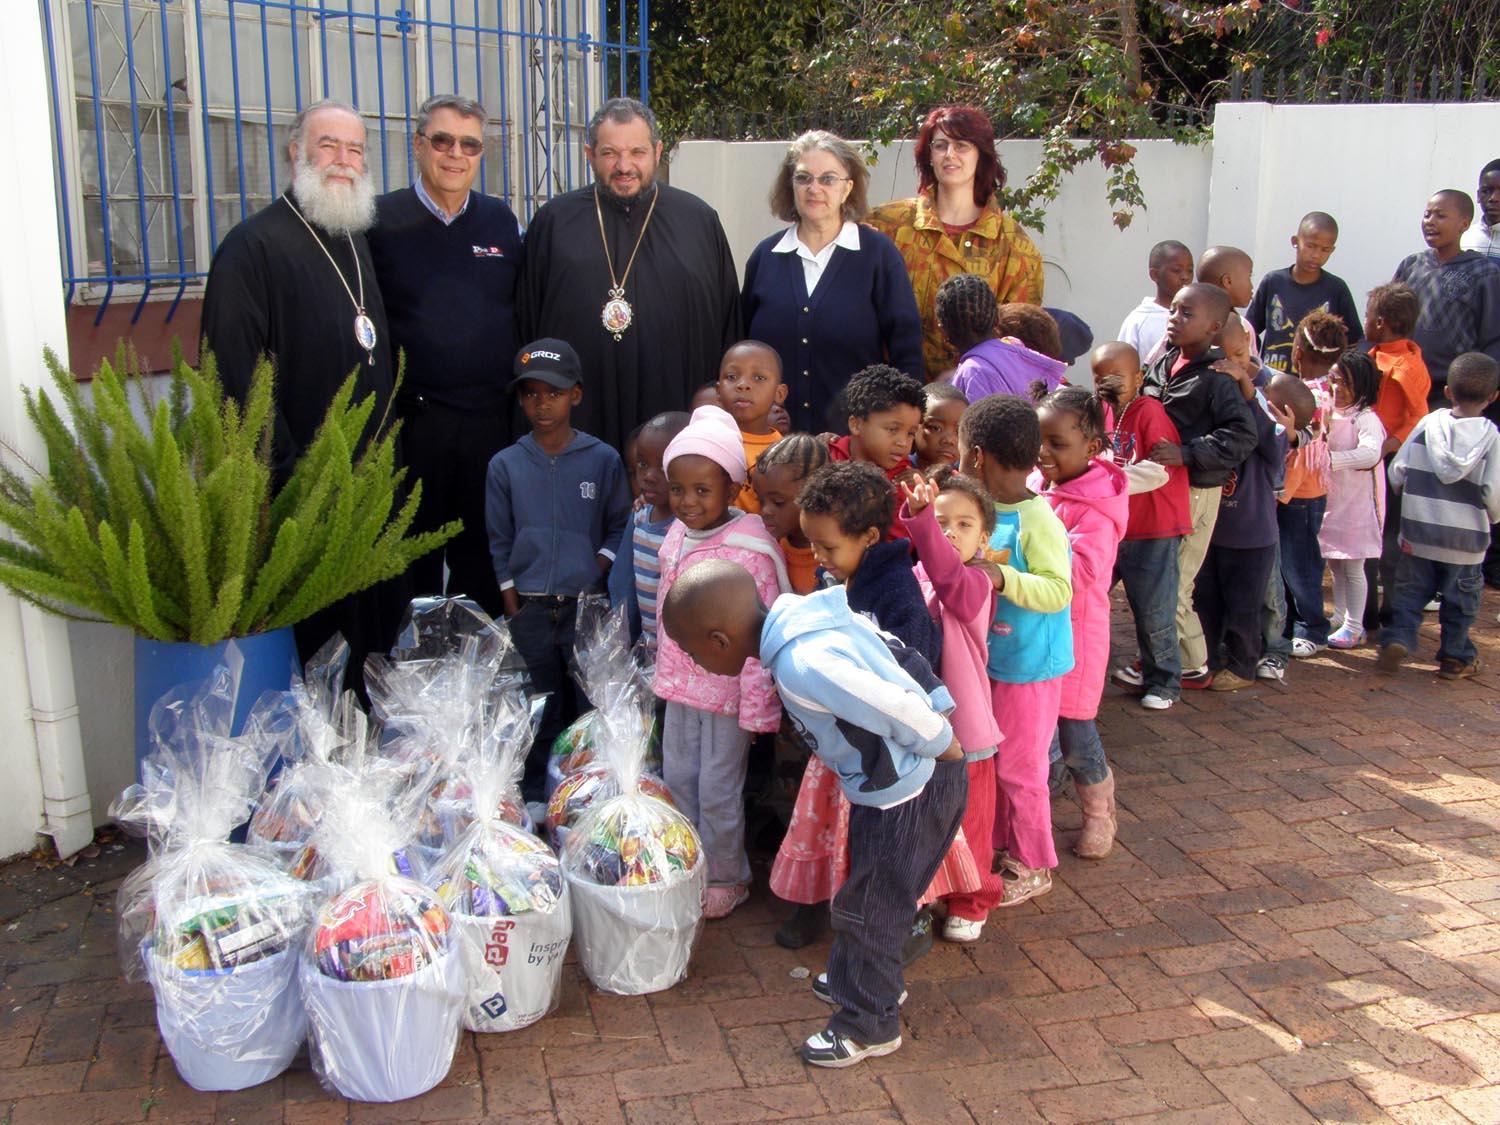 Ιεραποστολική επίσκεψη της Α.Θ.Μ. στην Νότια Αφρική - Διανομή δεμάτων με τρόφιμα και δώρα στα εμπερίστατα παιδιά του Γιαχάνεσμπουργκ.